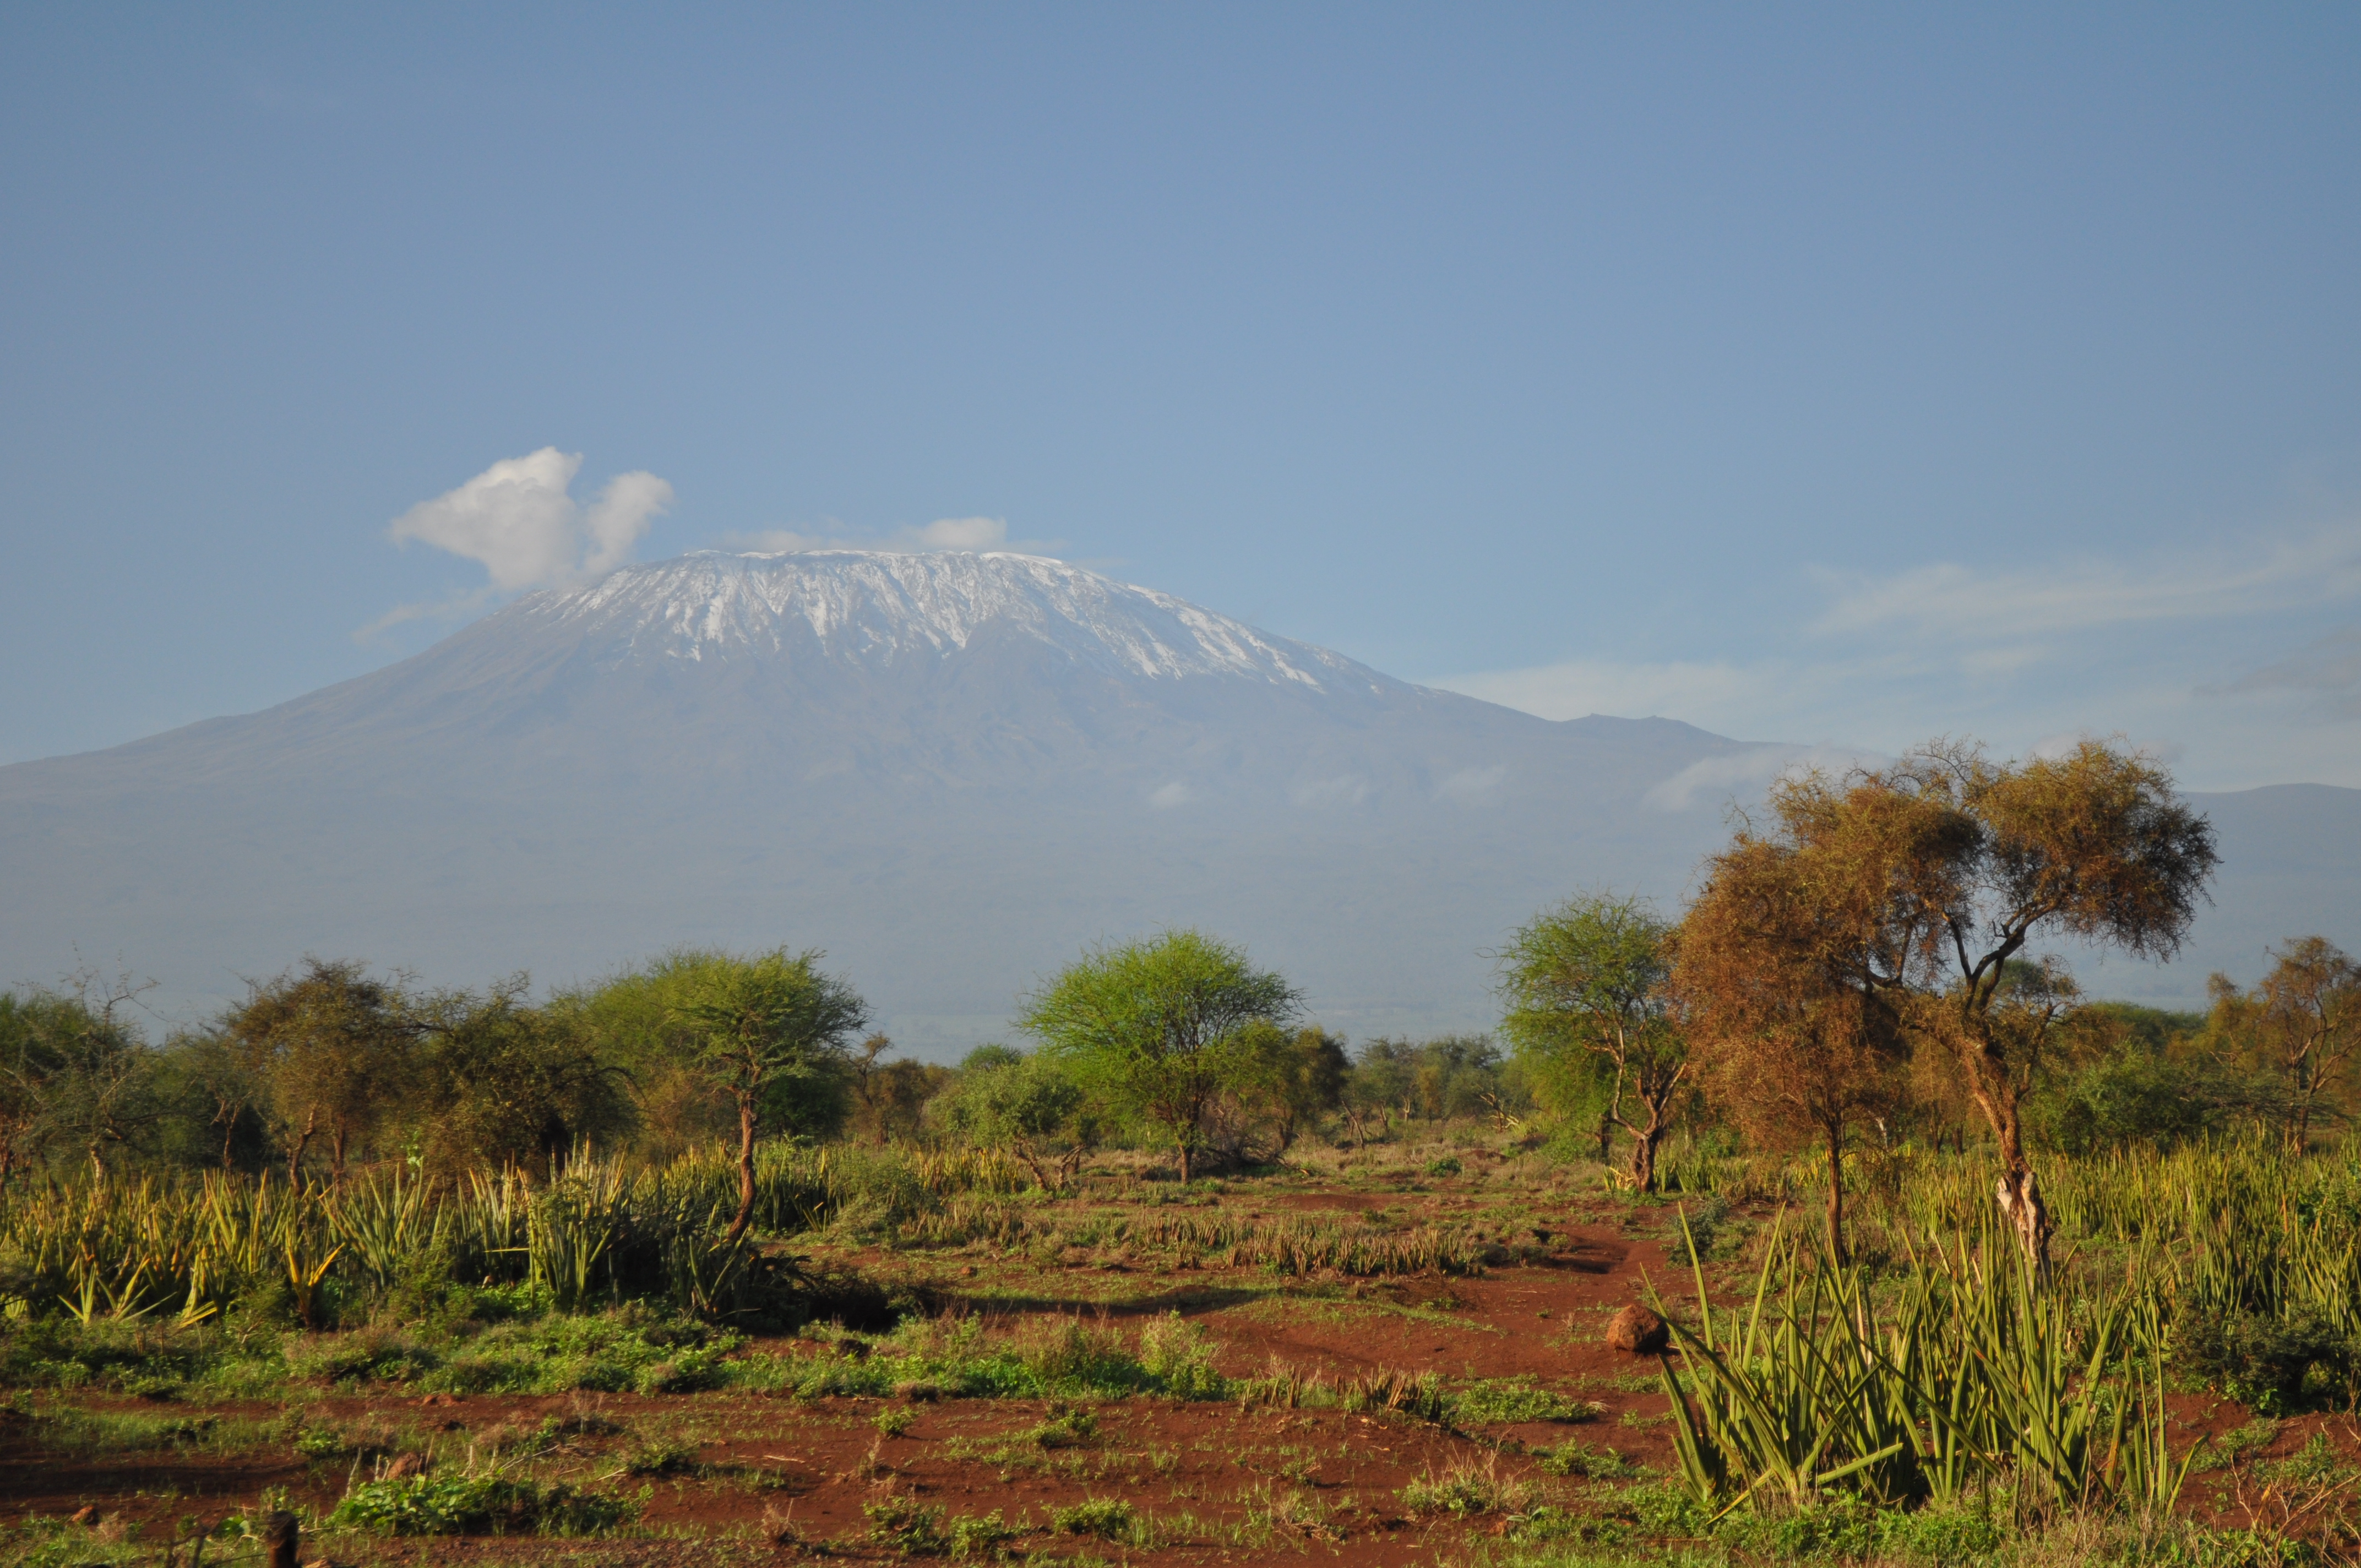 Image: View of Mount Kilimanjaro from Kenya